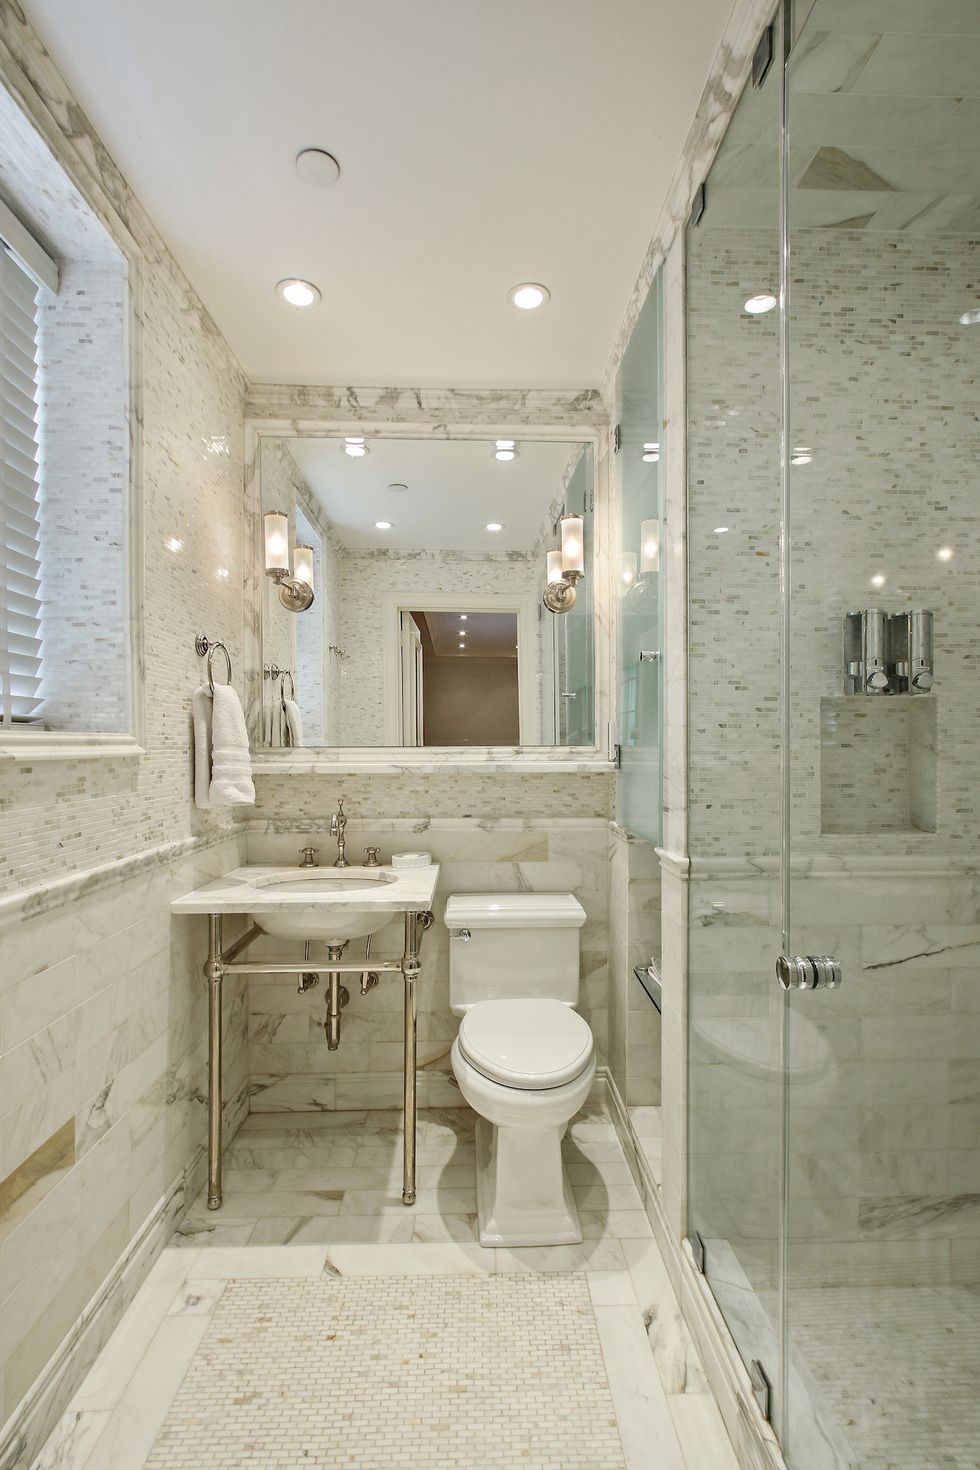 Bathroom, Room, Property, Interior design, Ceiling, Architecture, Floor, Plumbing fixture, Tile, Building, 